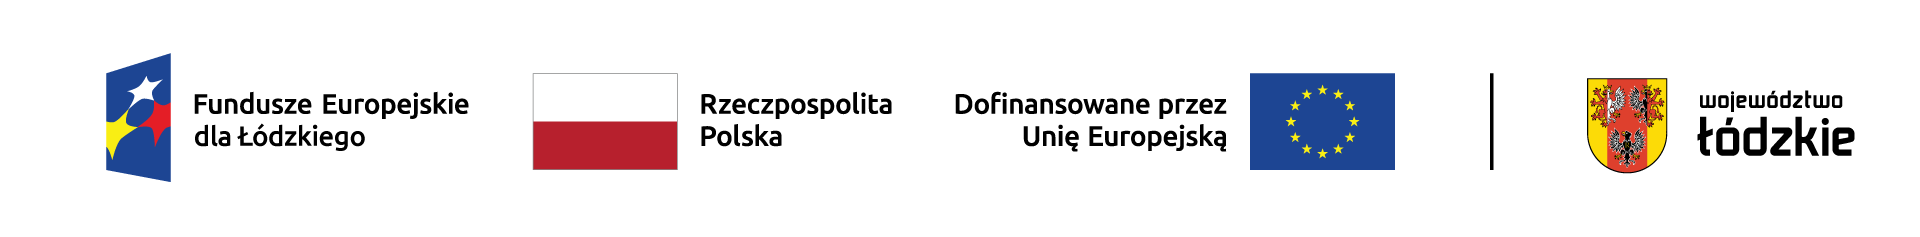 Fundusze Europejskie dla województwa łódzkiego